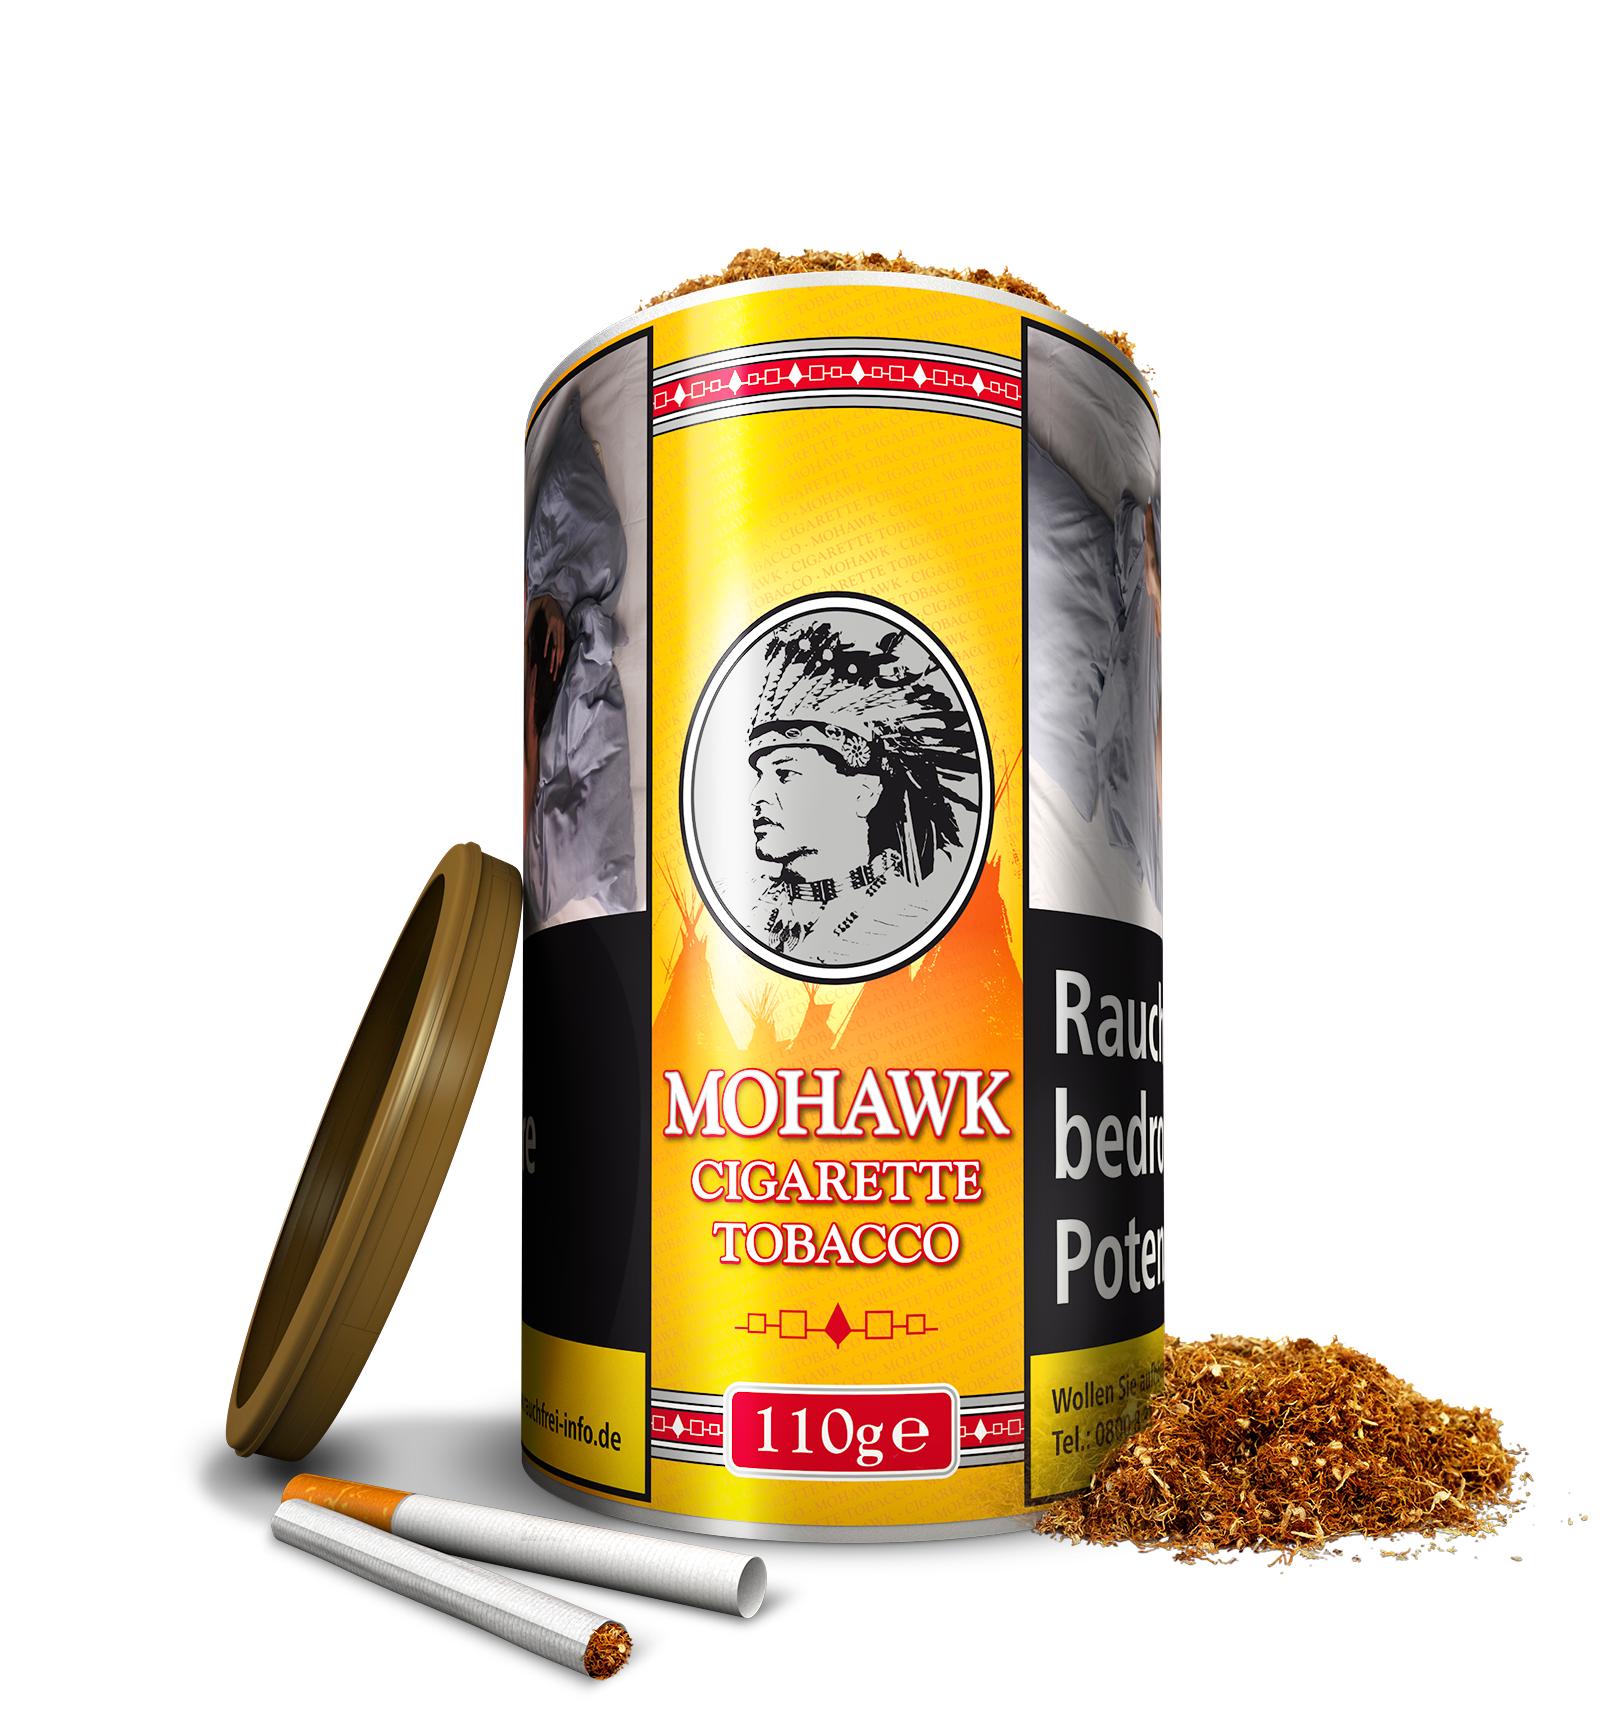 Mohawk Cigarette Tobacco 1 x 110g Tabak